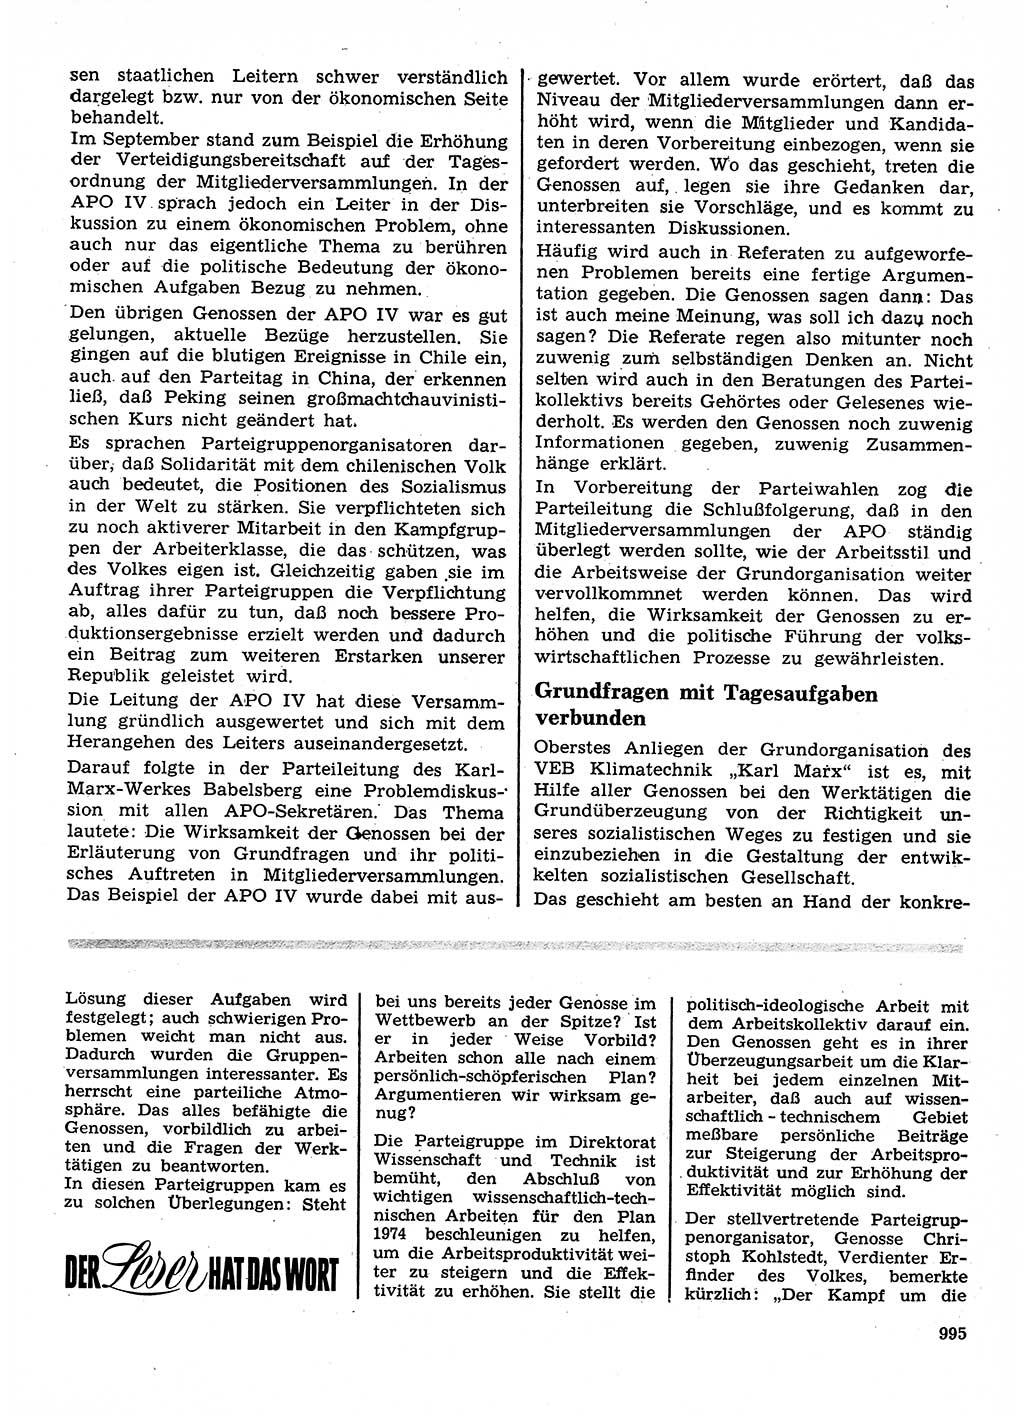 Neuer Weg (NW), Organ des Zentralkomitees (ZK) der SED (Sozialistische Einheitspartei Deutschlands) für Fragen des Parteilebens, 28. Jahrgang [Deutsche Demokratische Republik (DDR)] 1973, Seite 995 (NW ZK SED DDR 1973, S. 995)